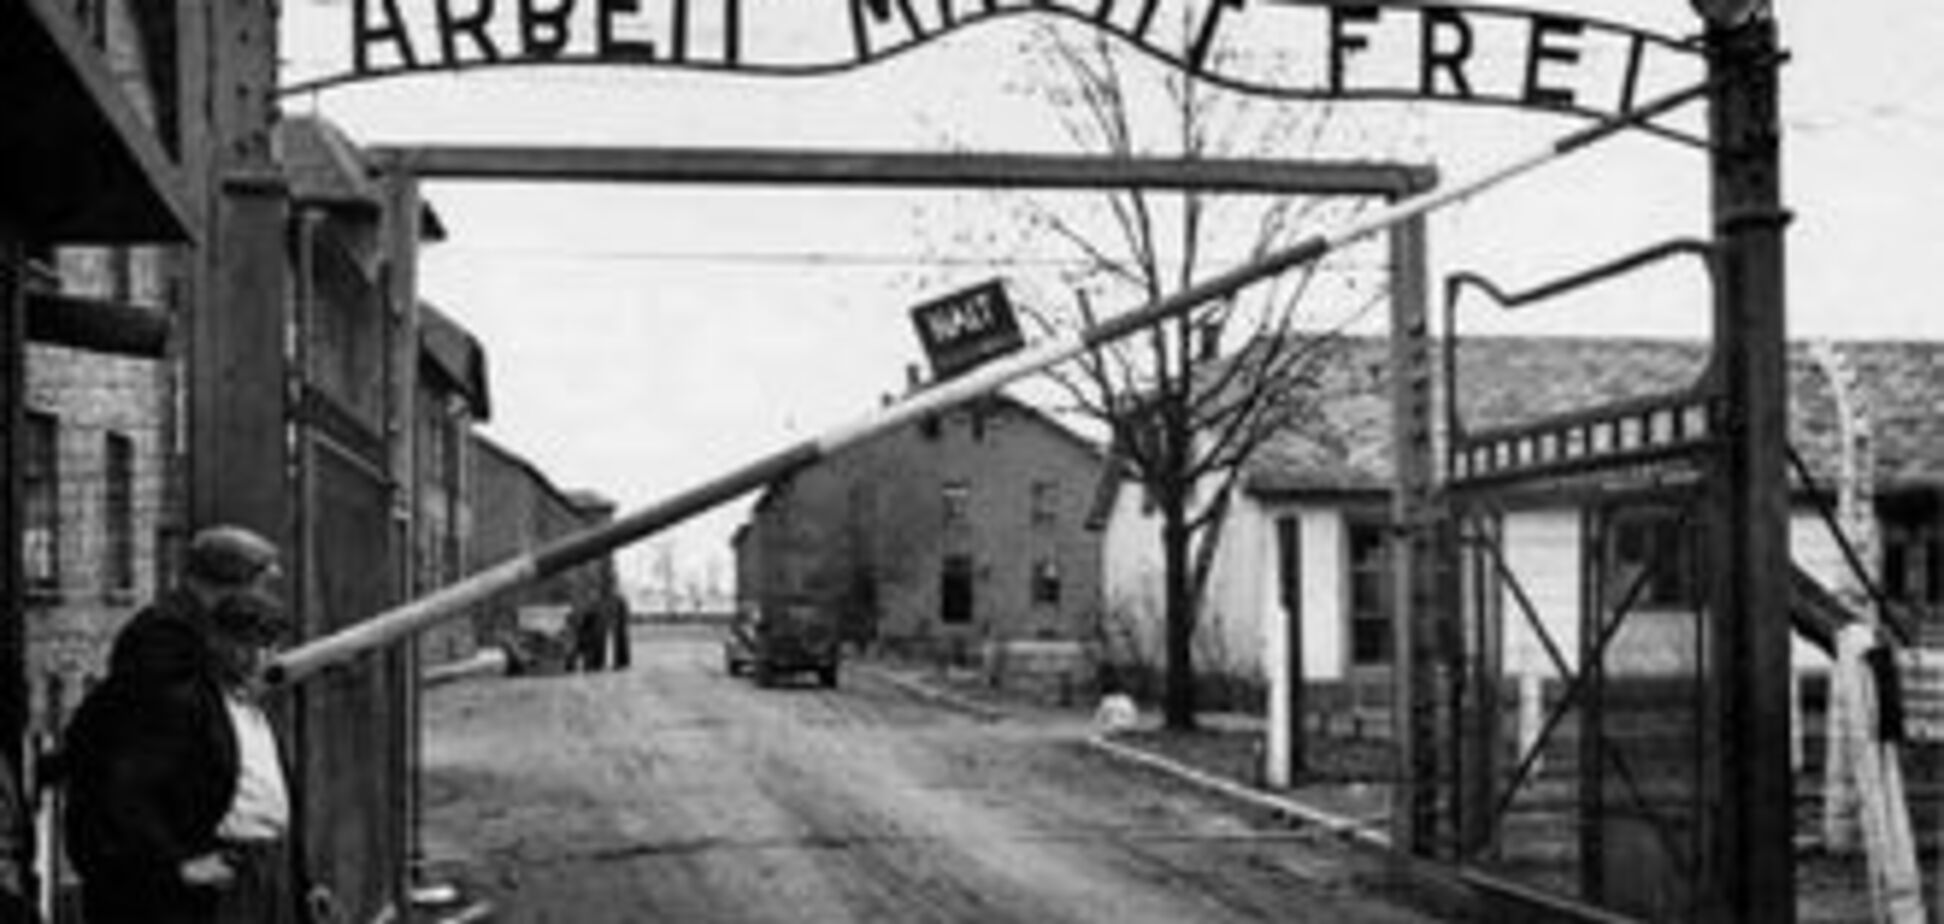 Табличка 'Arbeit Macht Frei' вернулась на ворота Освенцима